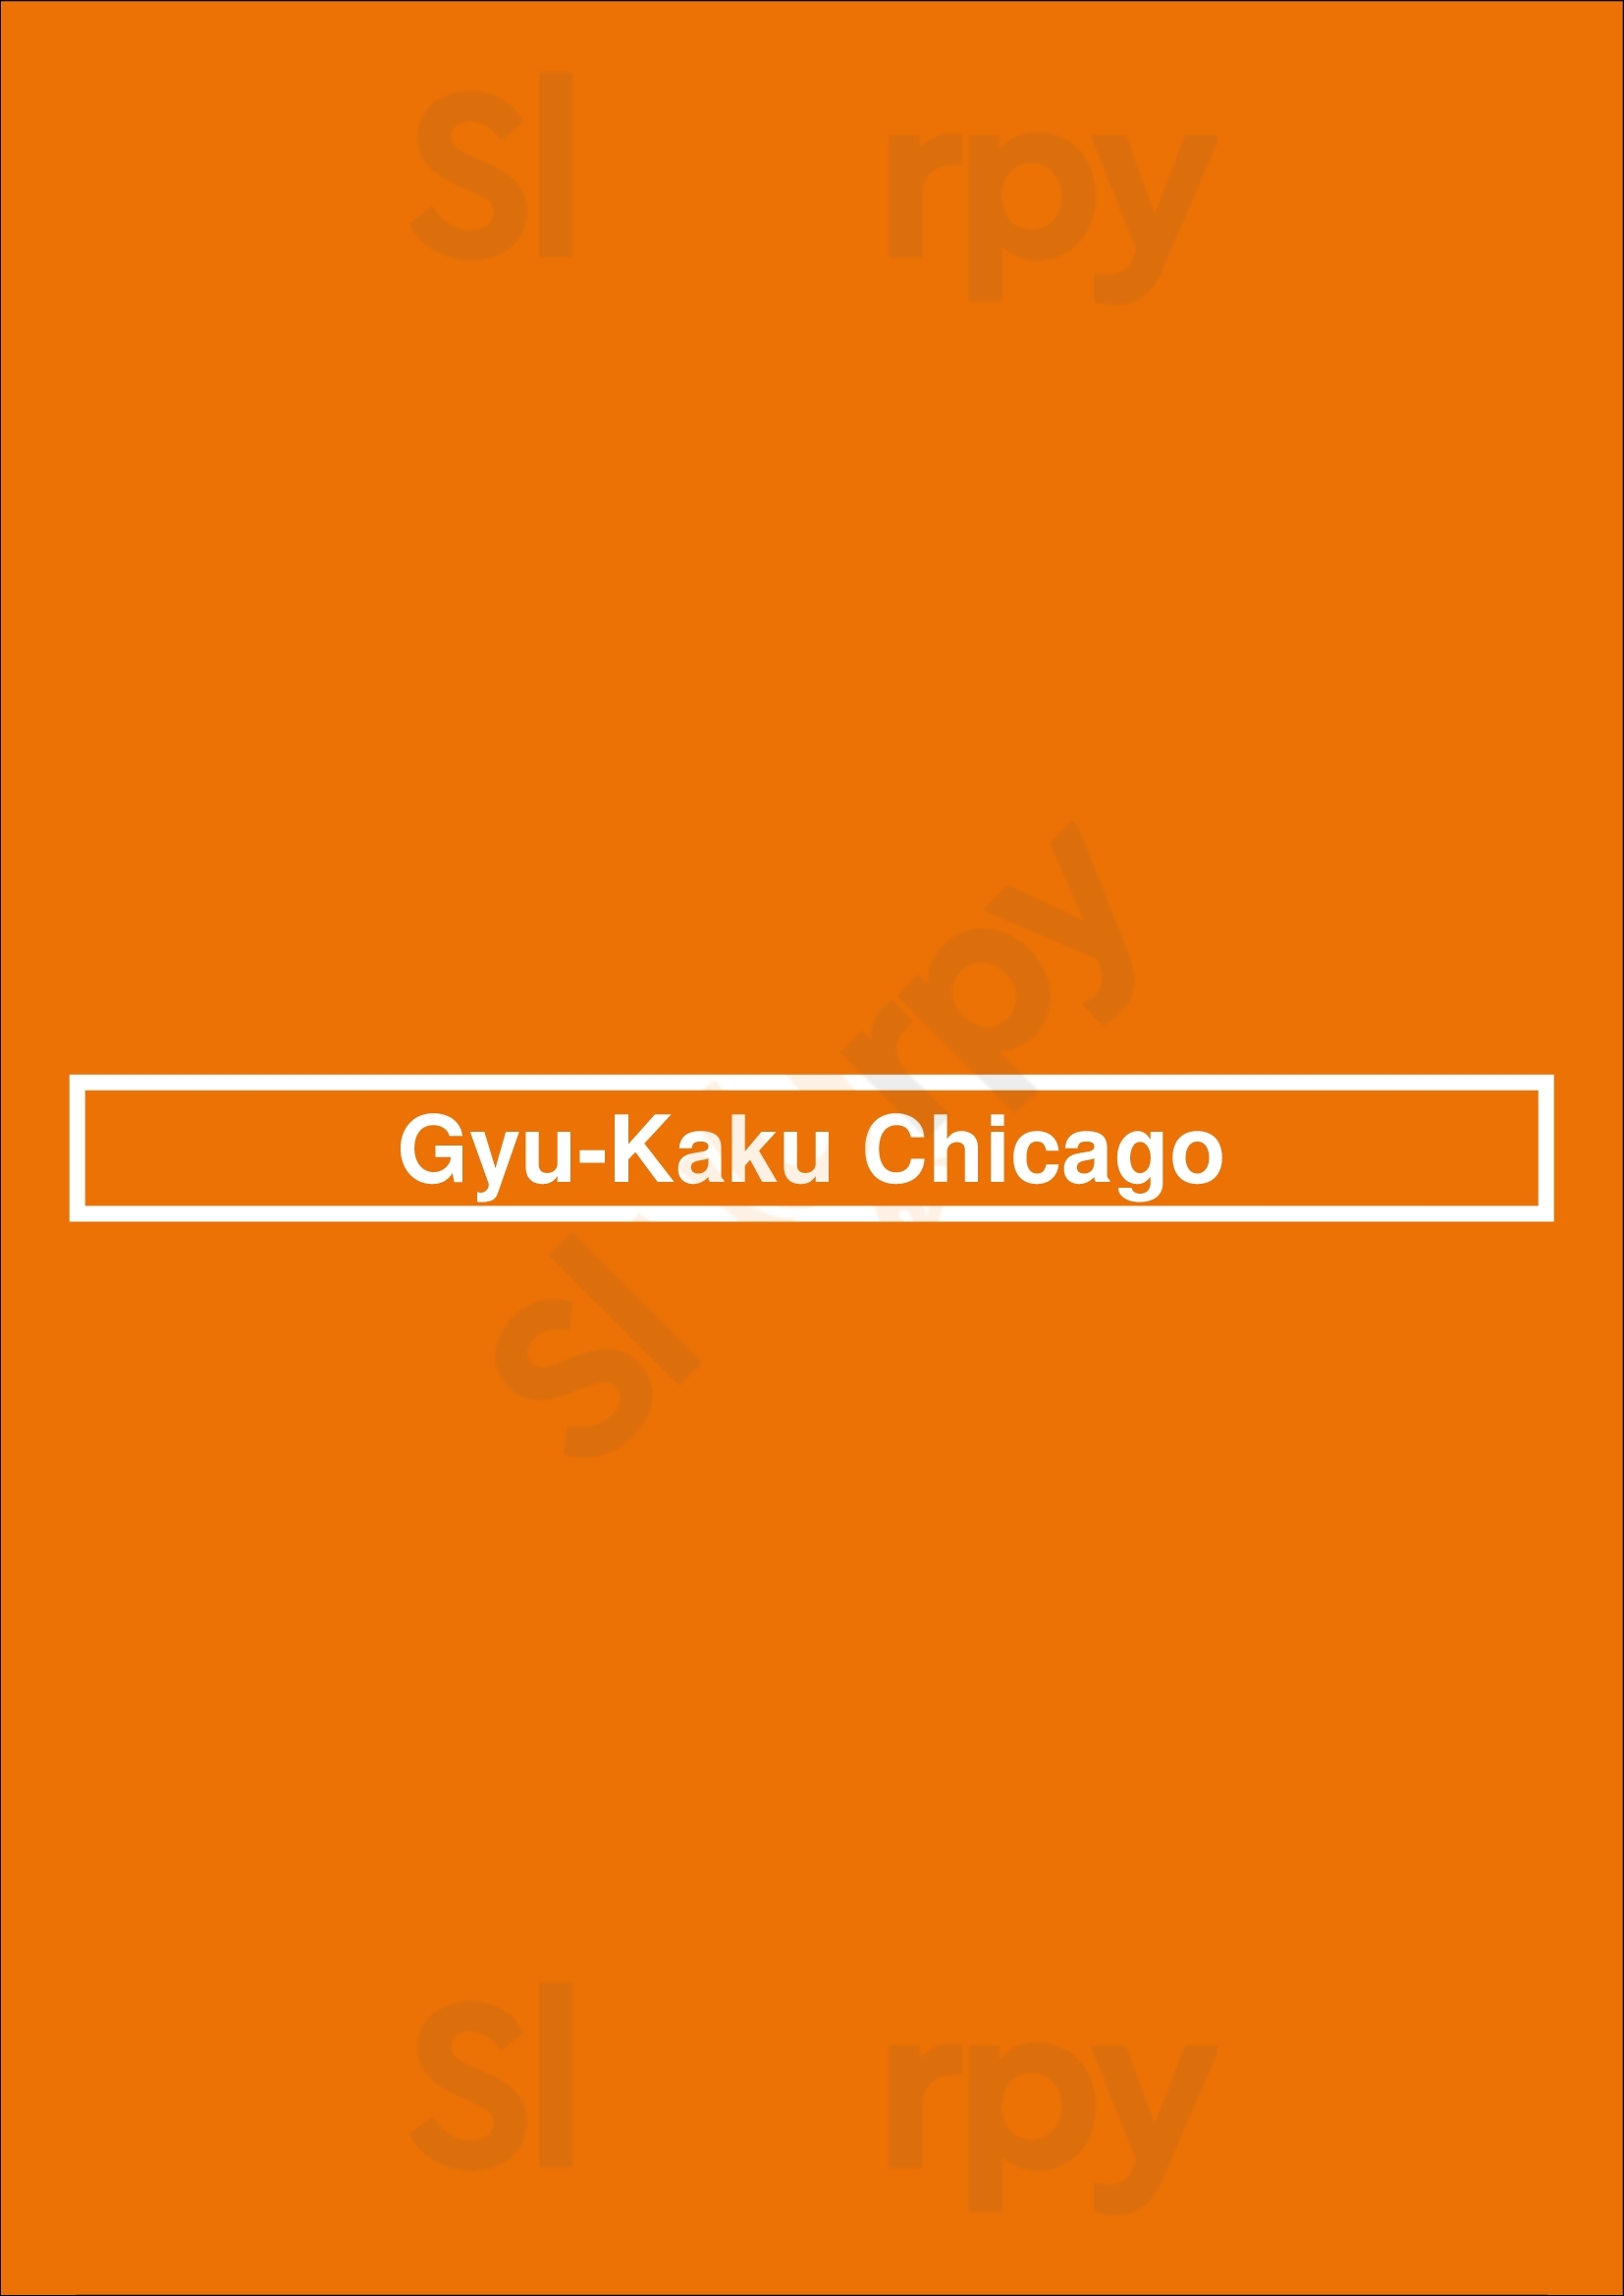 Gyu-kaku Japanese Bbq Chicago Menu - 1